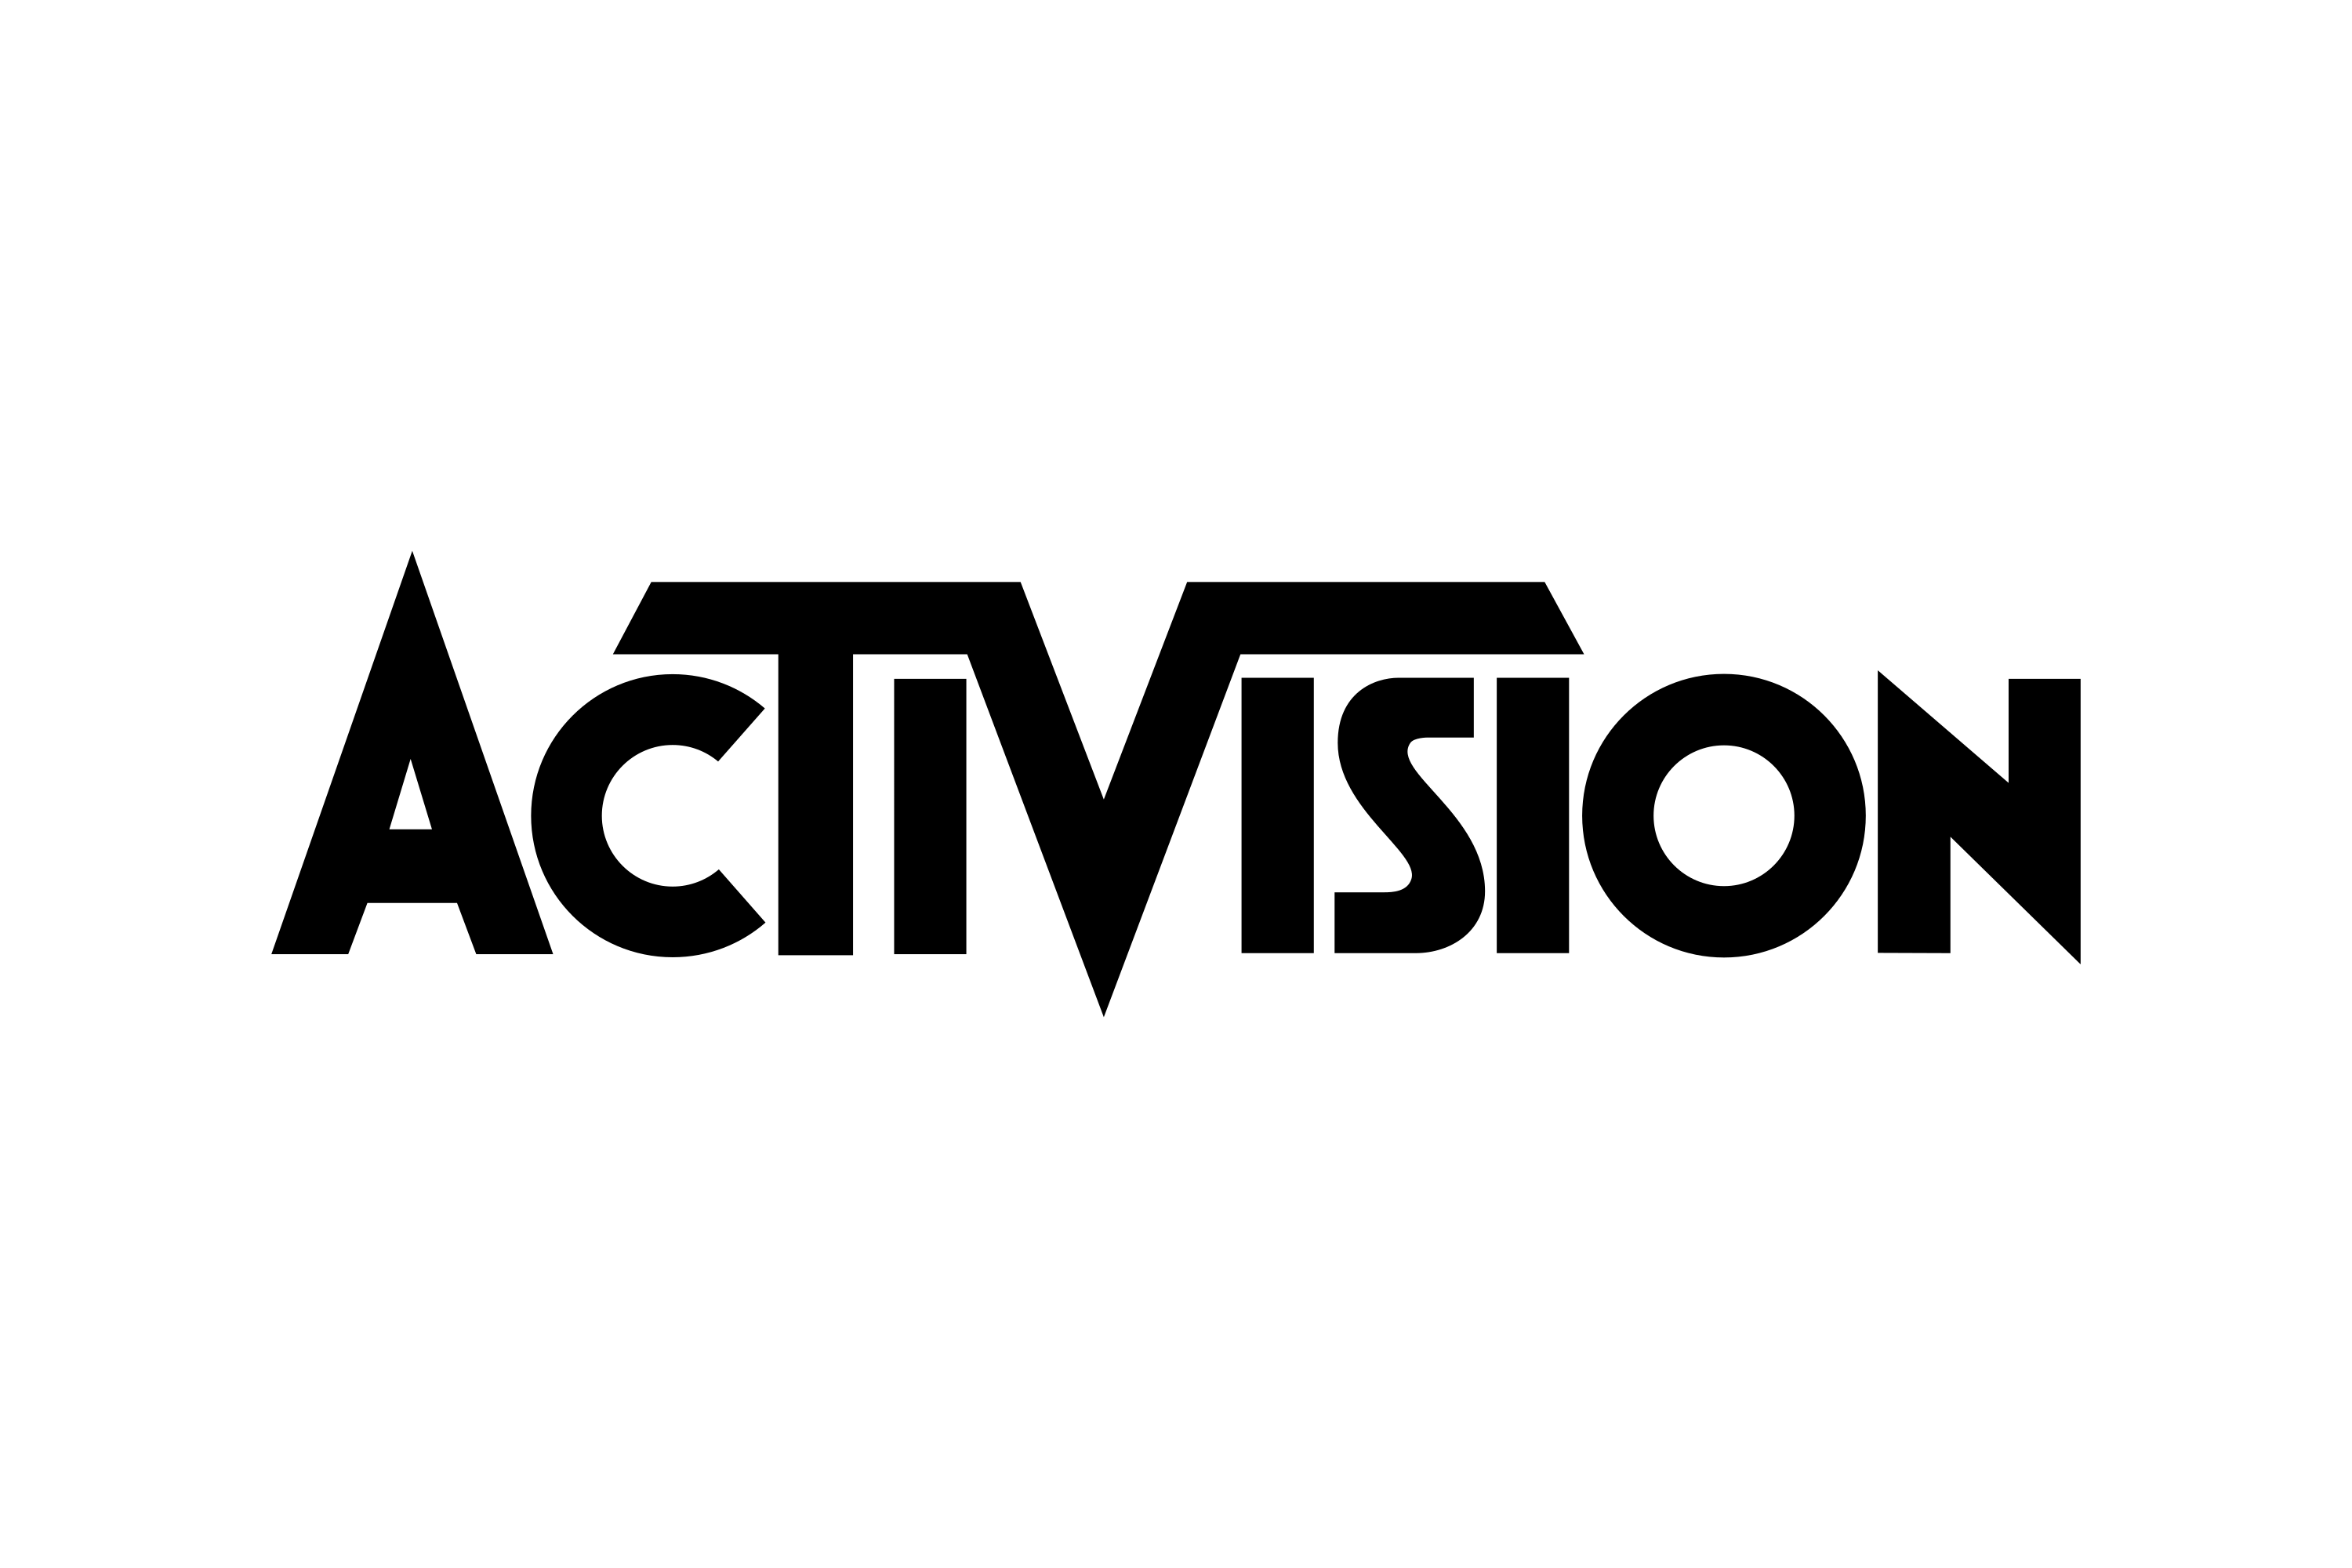 Activision Publishing, Inc. Logo